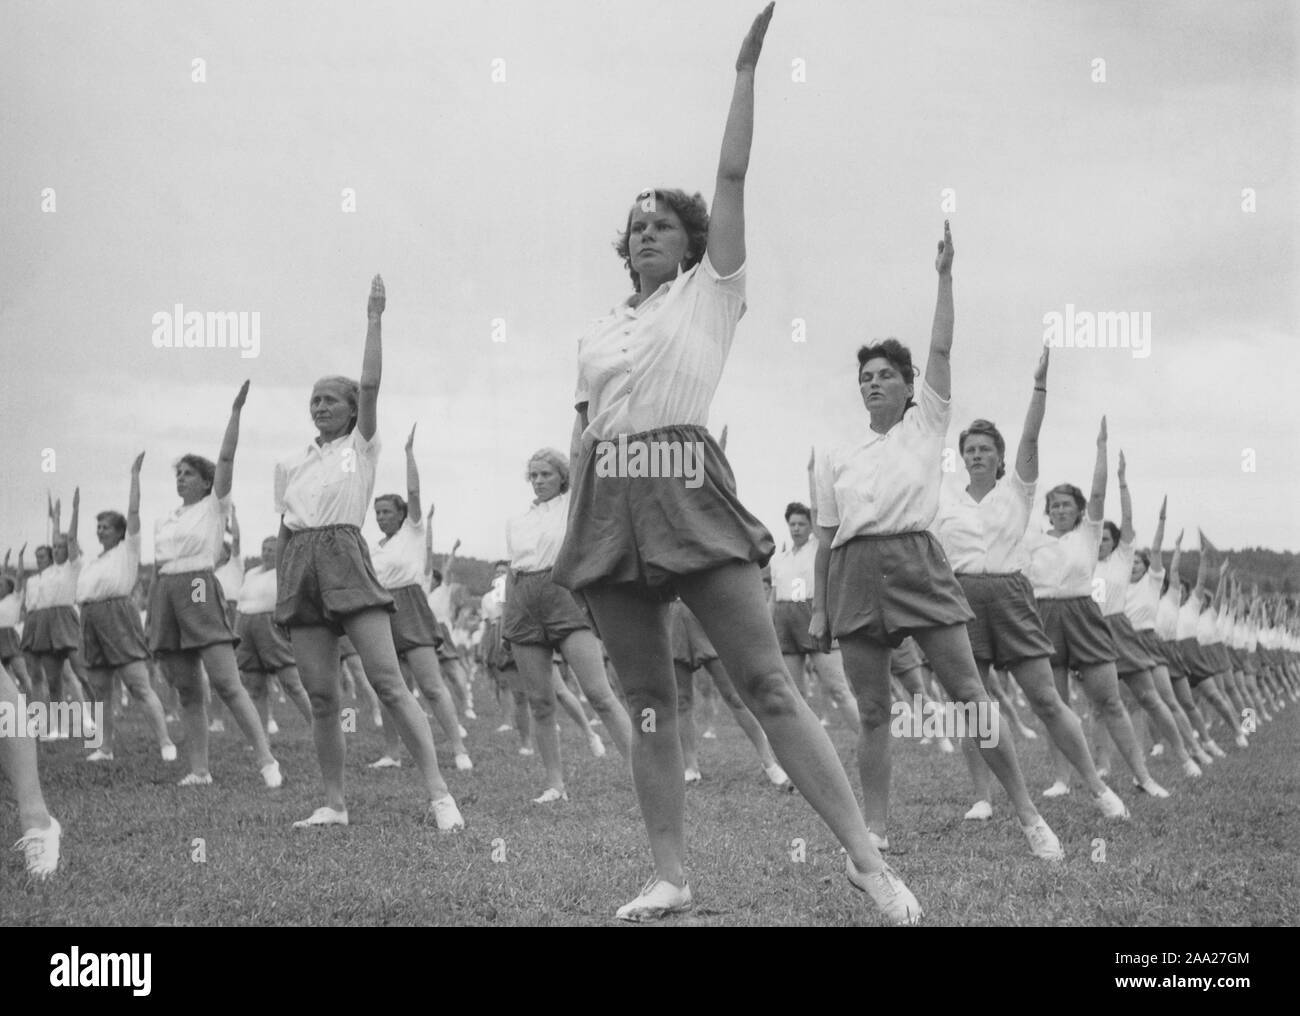 La gymnastique dans les années 40. La femme au foyer femmes populaires est en cours de gymnastique pratiquée partout. Dans les années 1940, les connaissances sur l'exercice physique et le encreased ont besoin d'être actifs, hommes et femmes. Ici un grand nombre de femmes qui exercent ensemble l'extérieur. Suède 1949 Banque D'Images